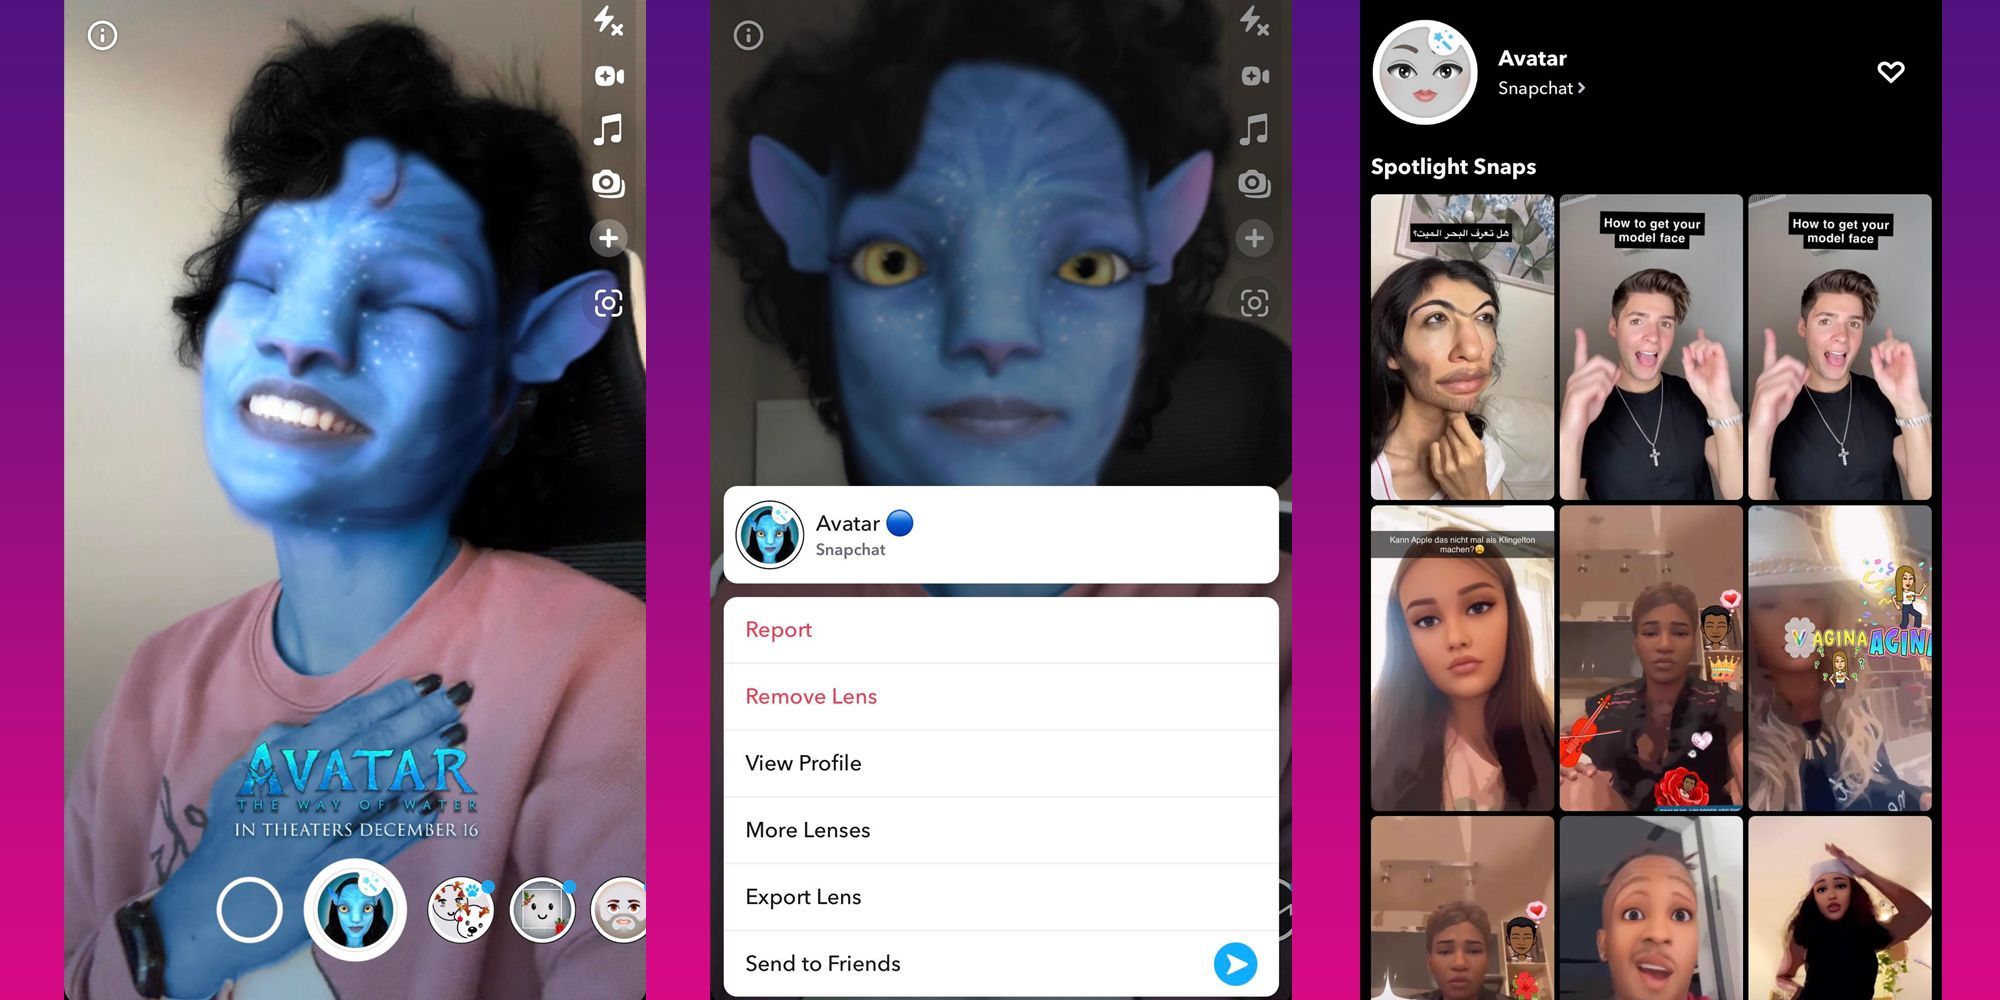 Screenshots displaying the Snapchat Avatar lens